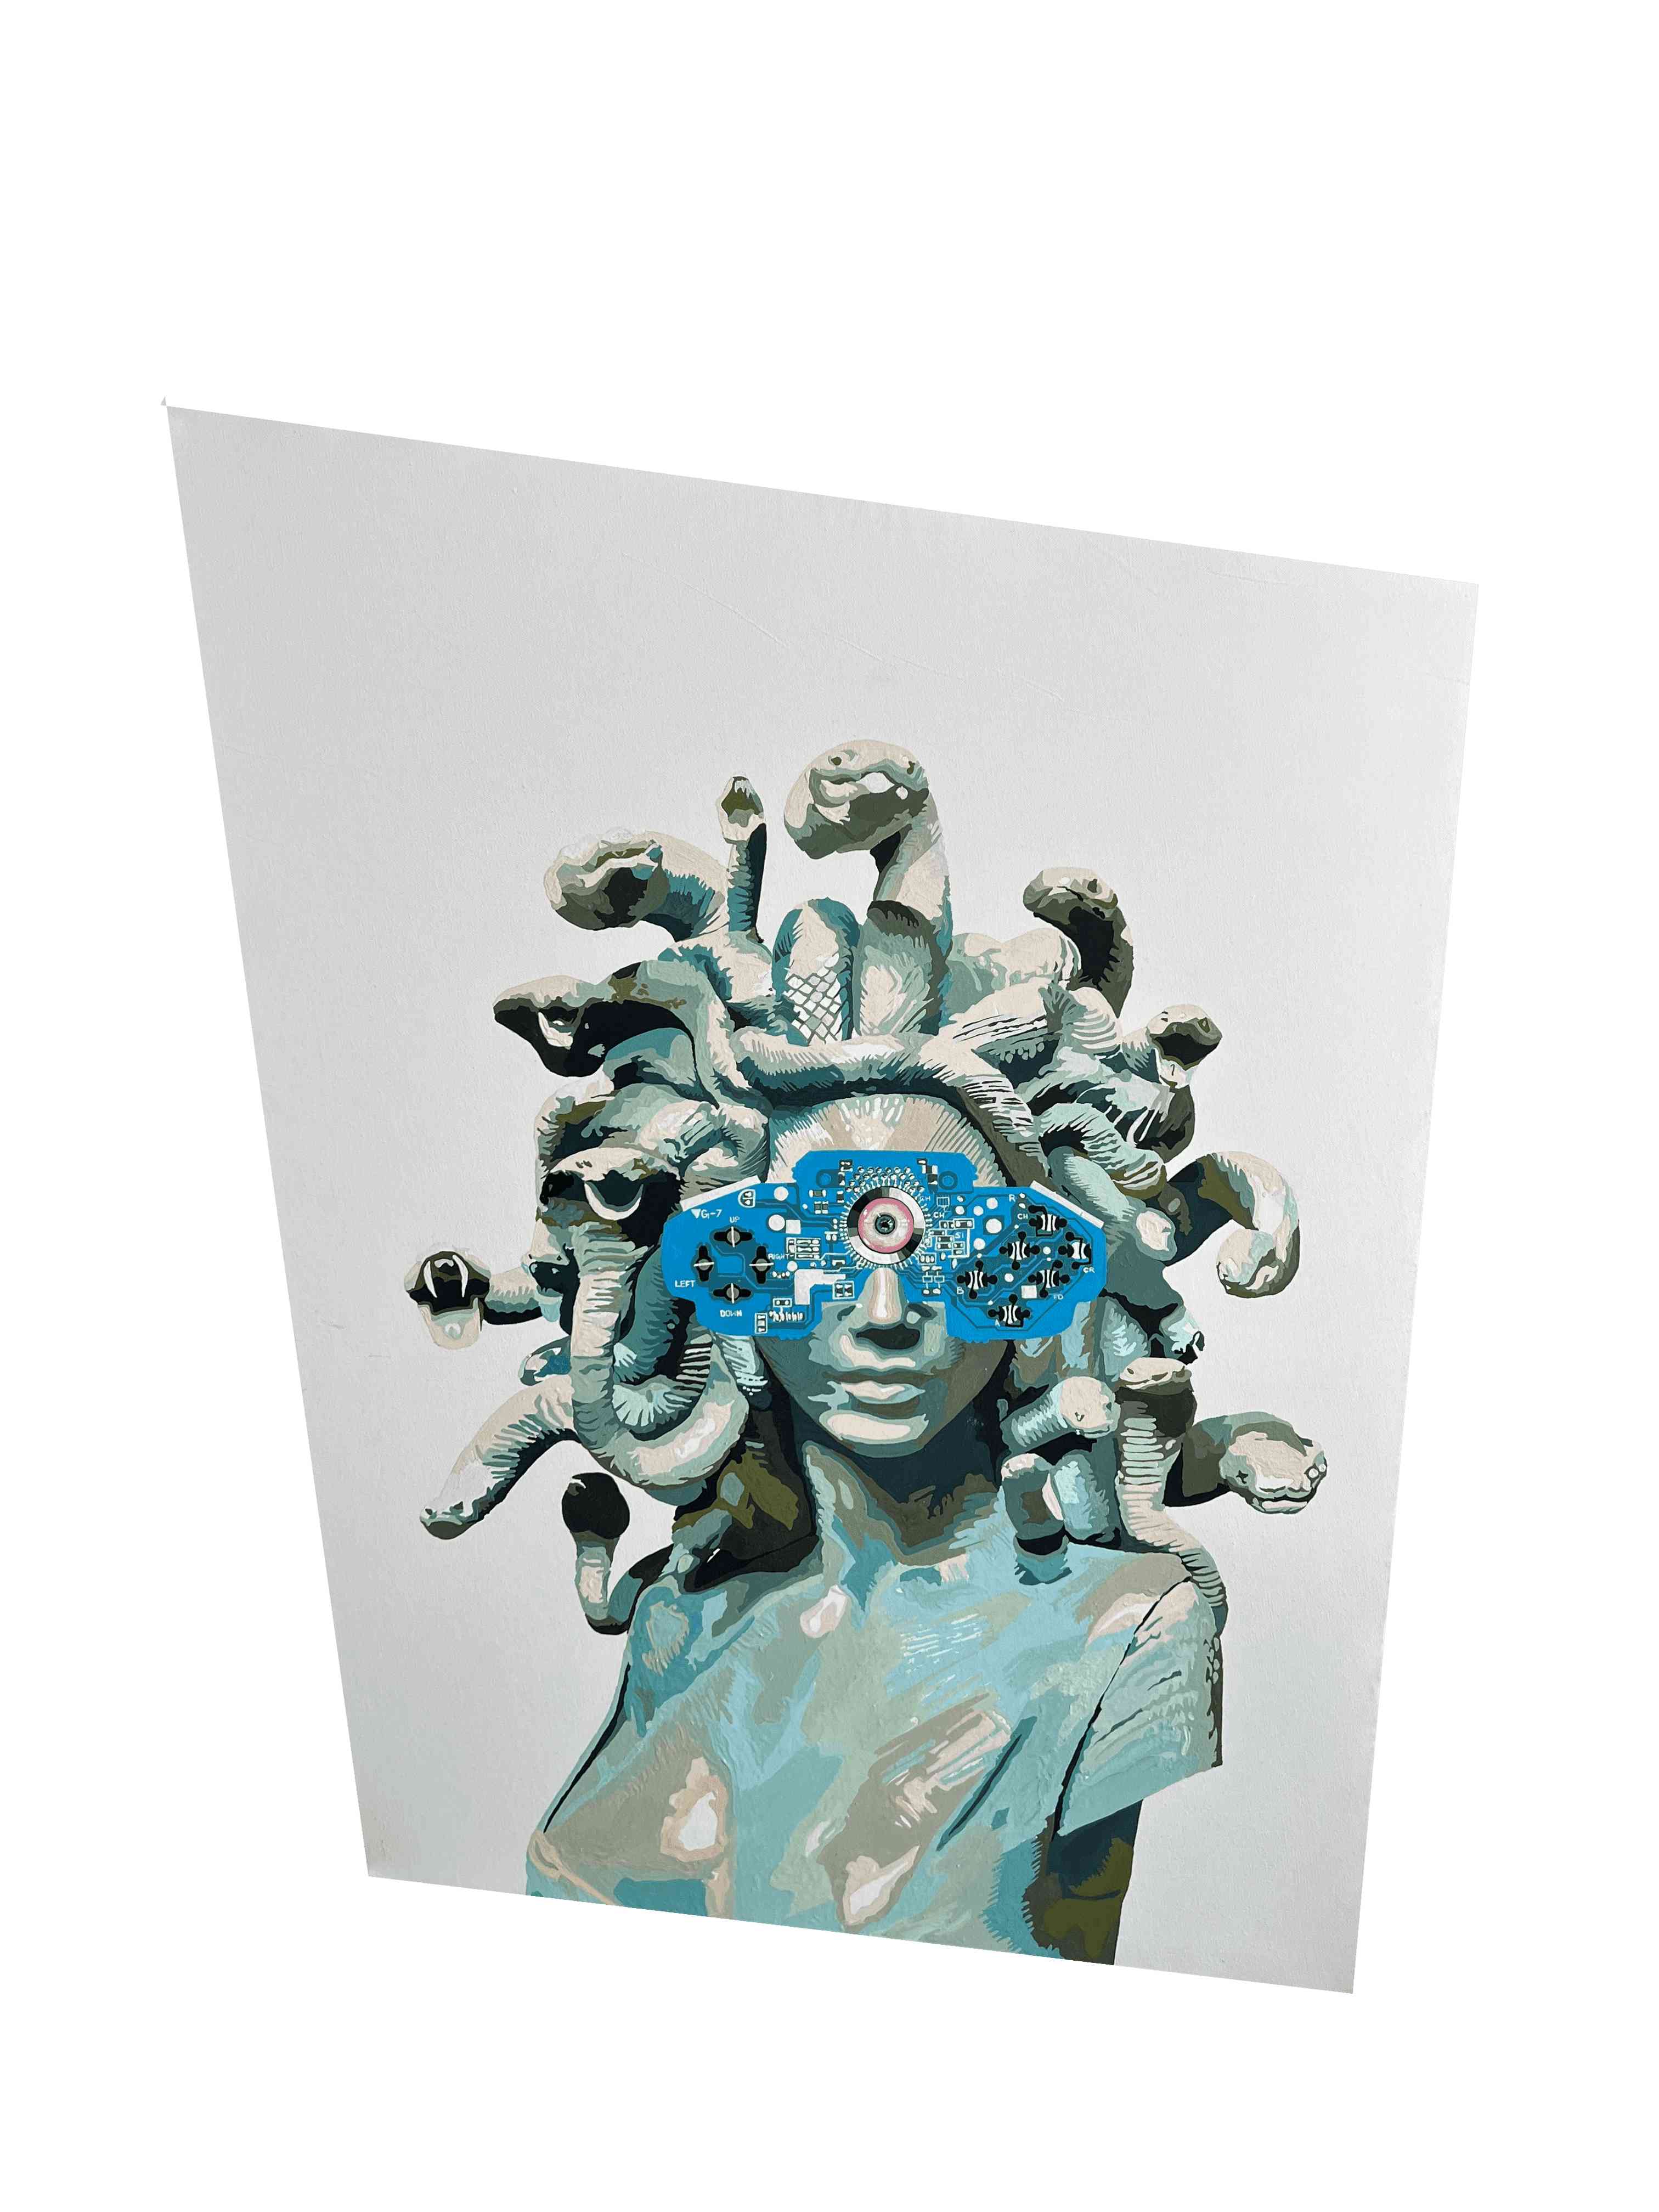 Artist: AB Rehman<br>The Medusa Ghaze<br>Medium: Acrylic on Canvas with Augmented Reality<br>Size: 32x35 inch